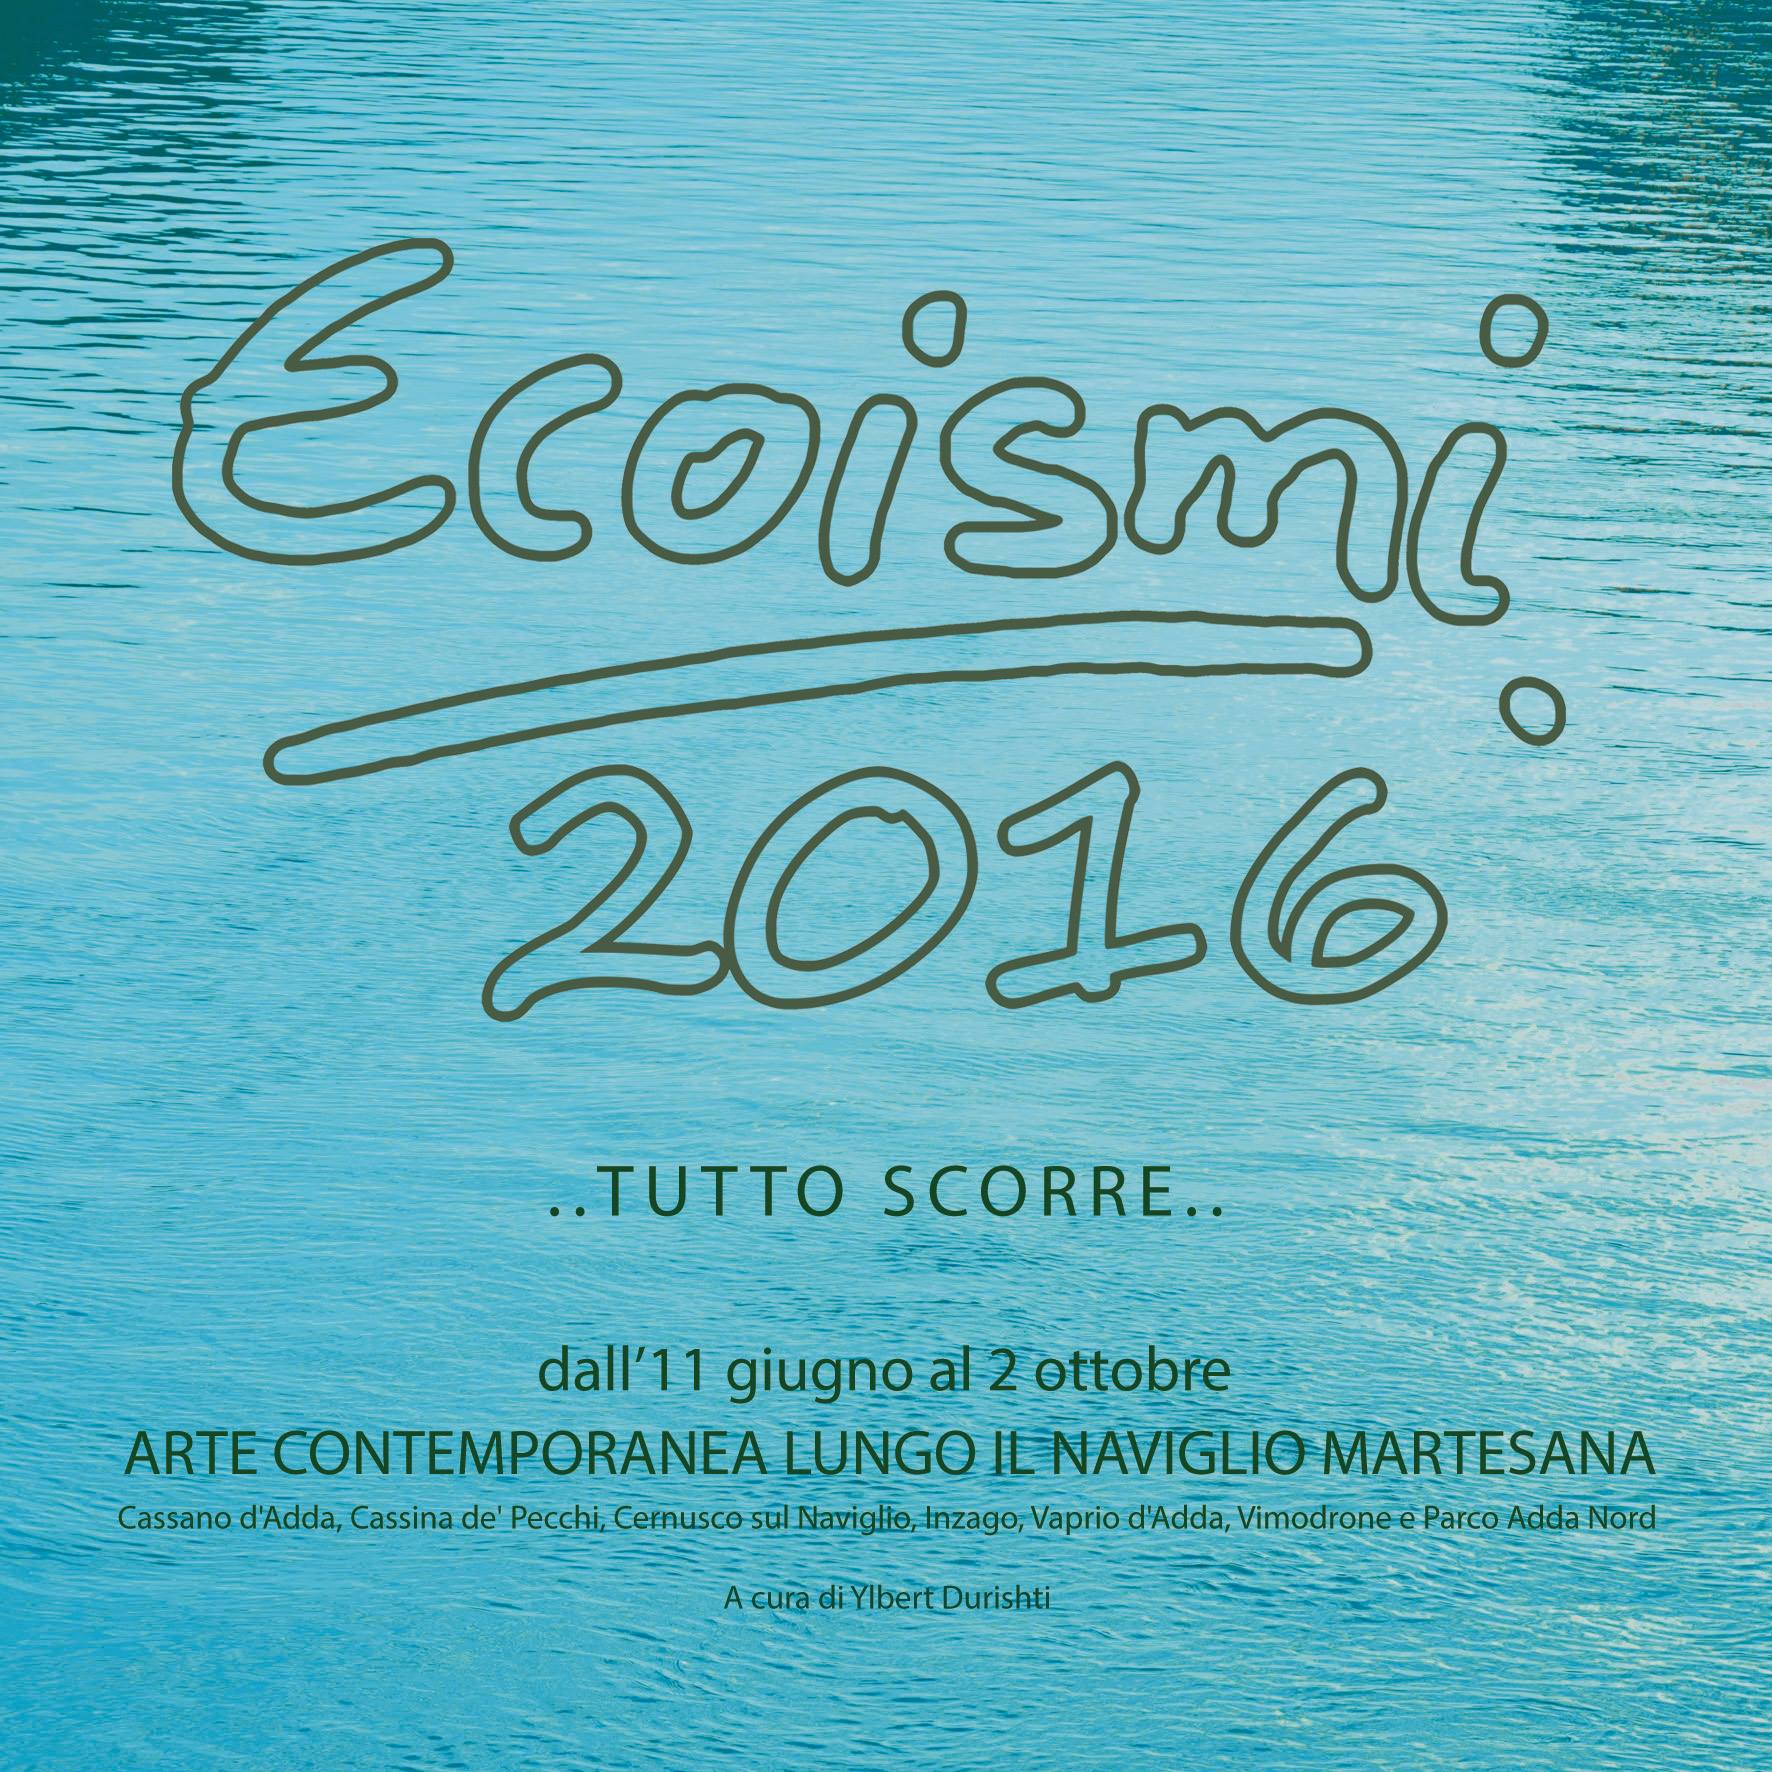 Ecoismi 2016 - Rassegna di Arte Contemporanea